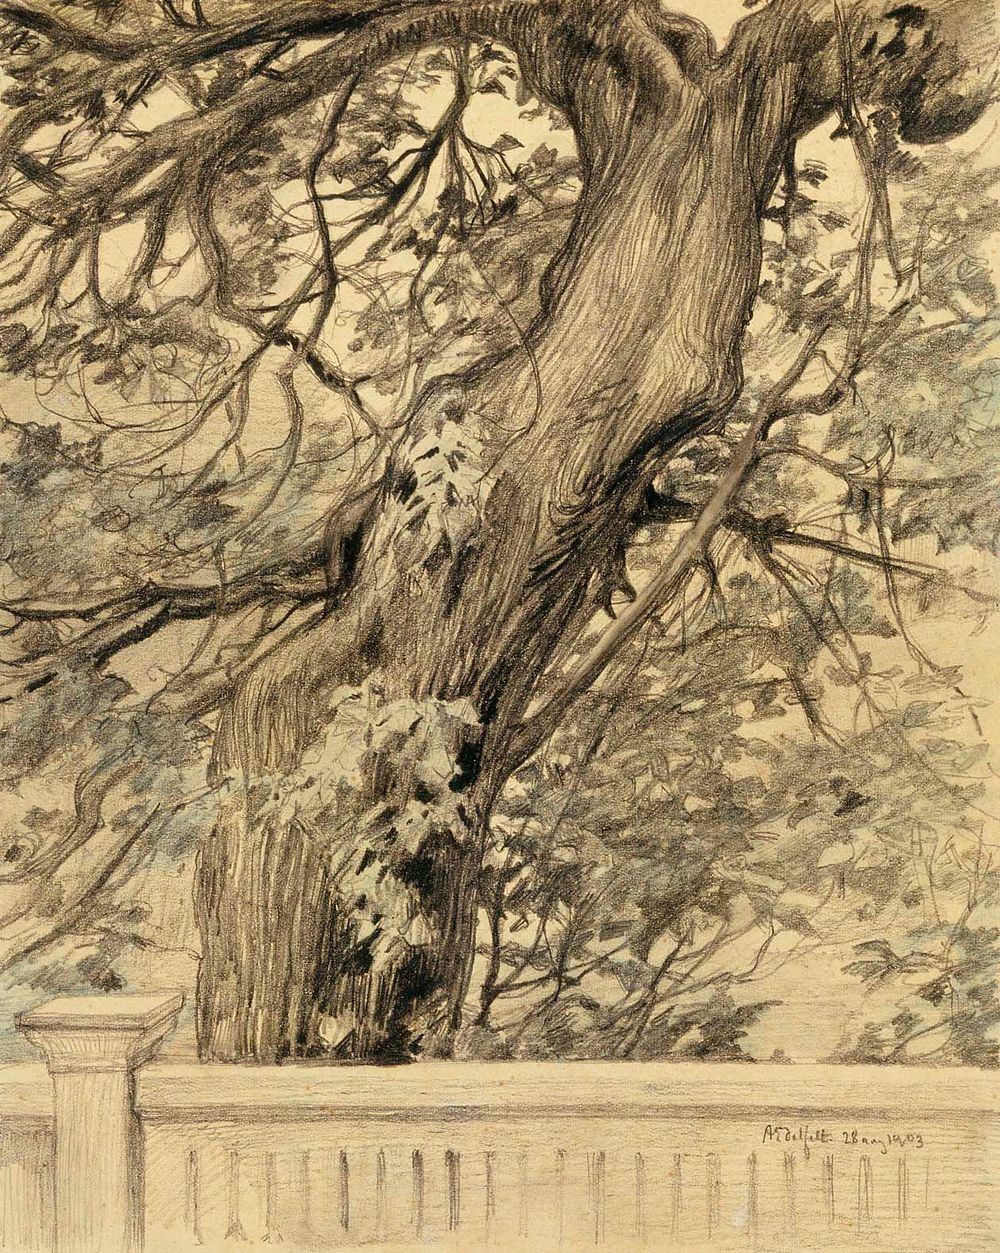 Vanha lehmus, 1903 by Albert Edelfelt